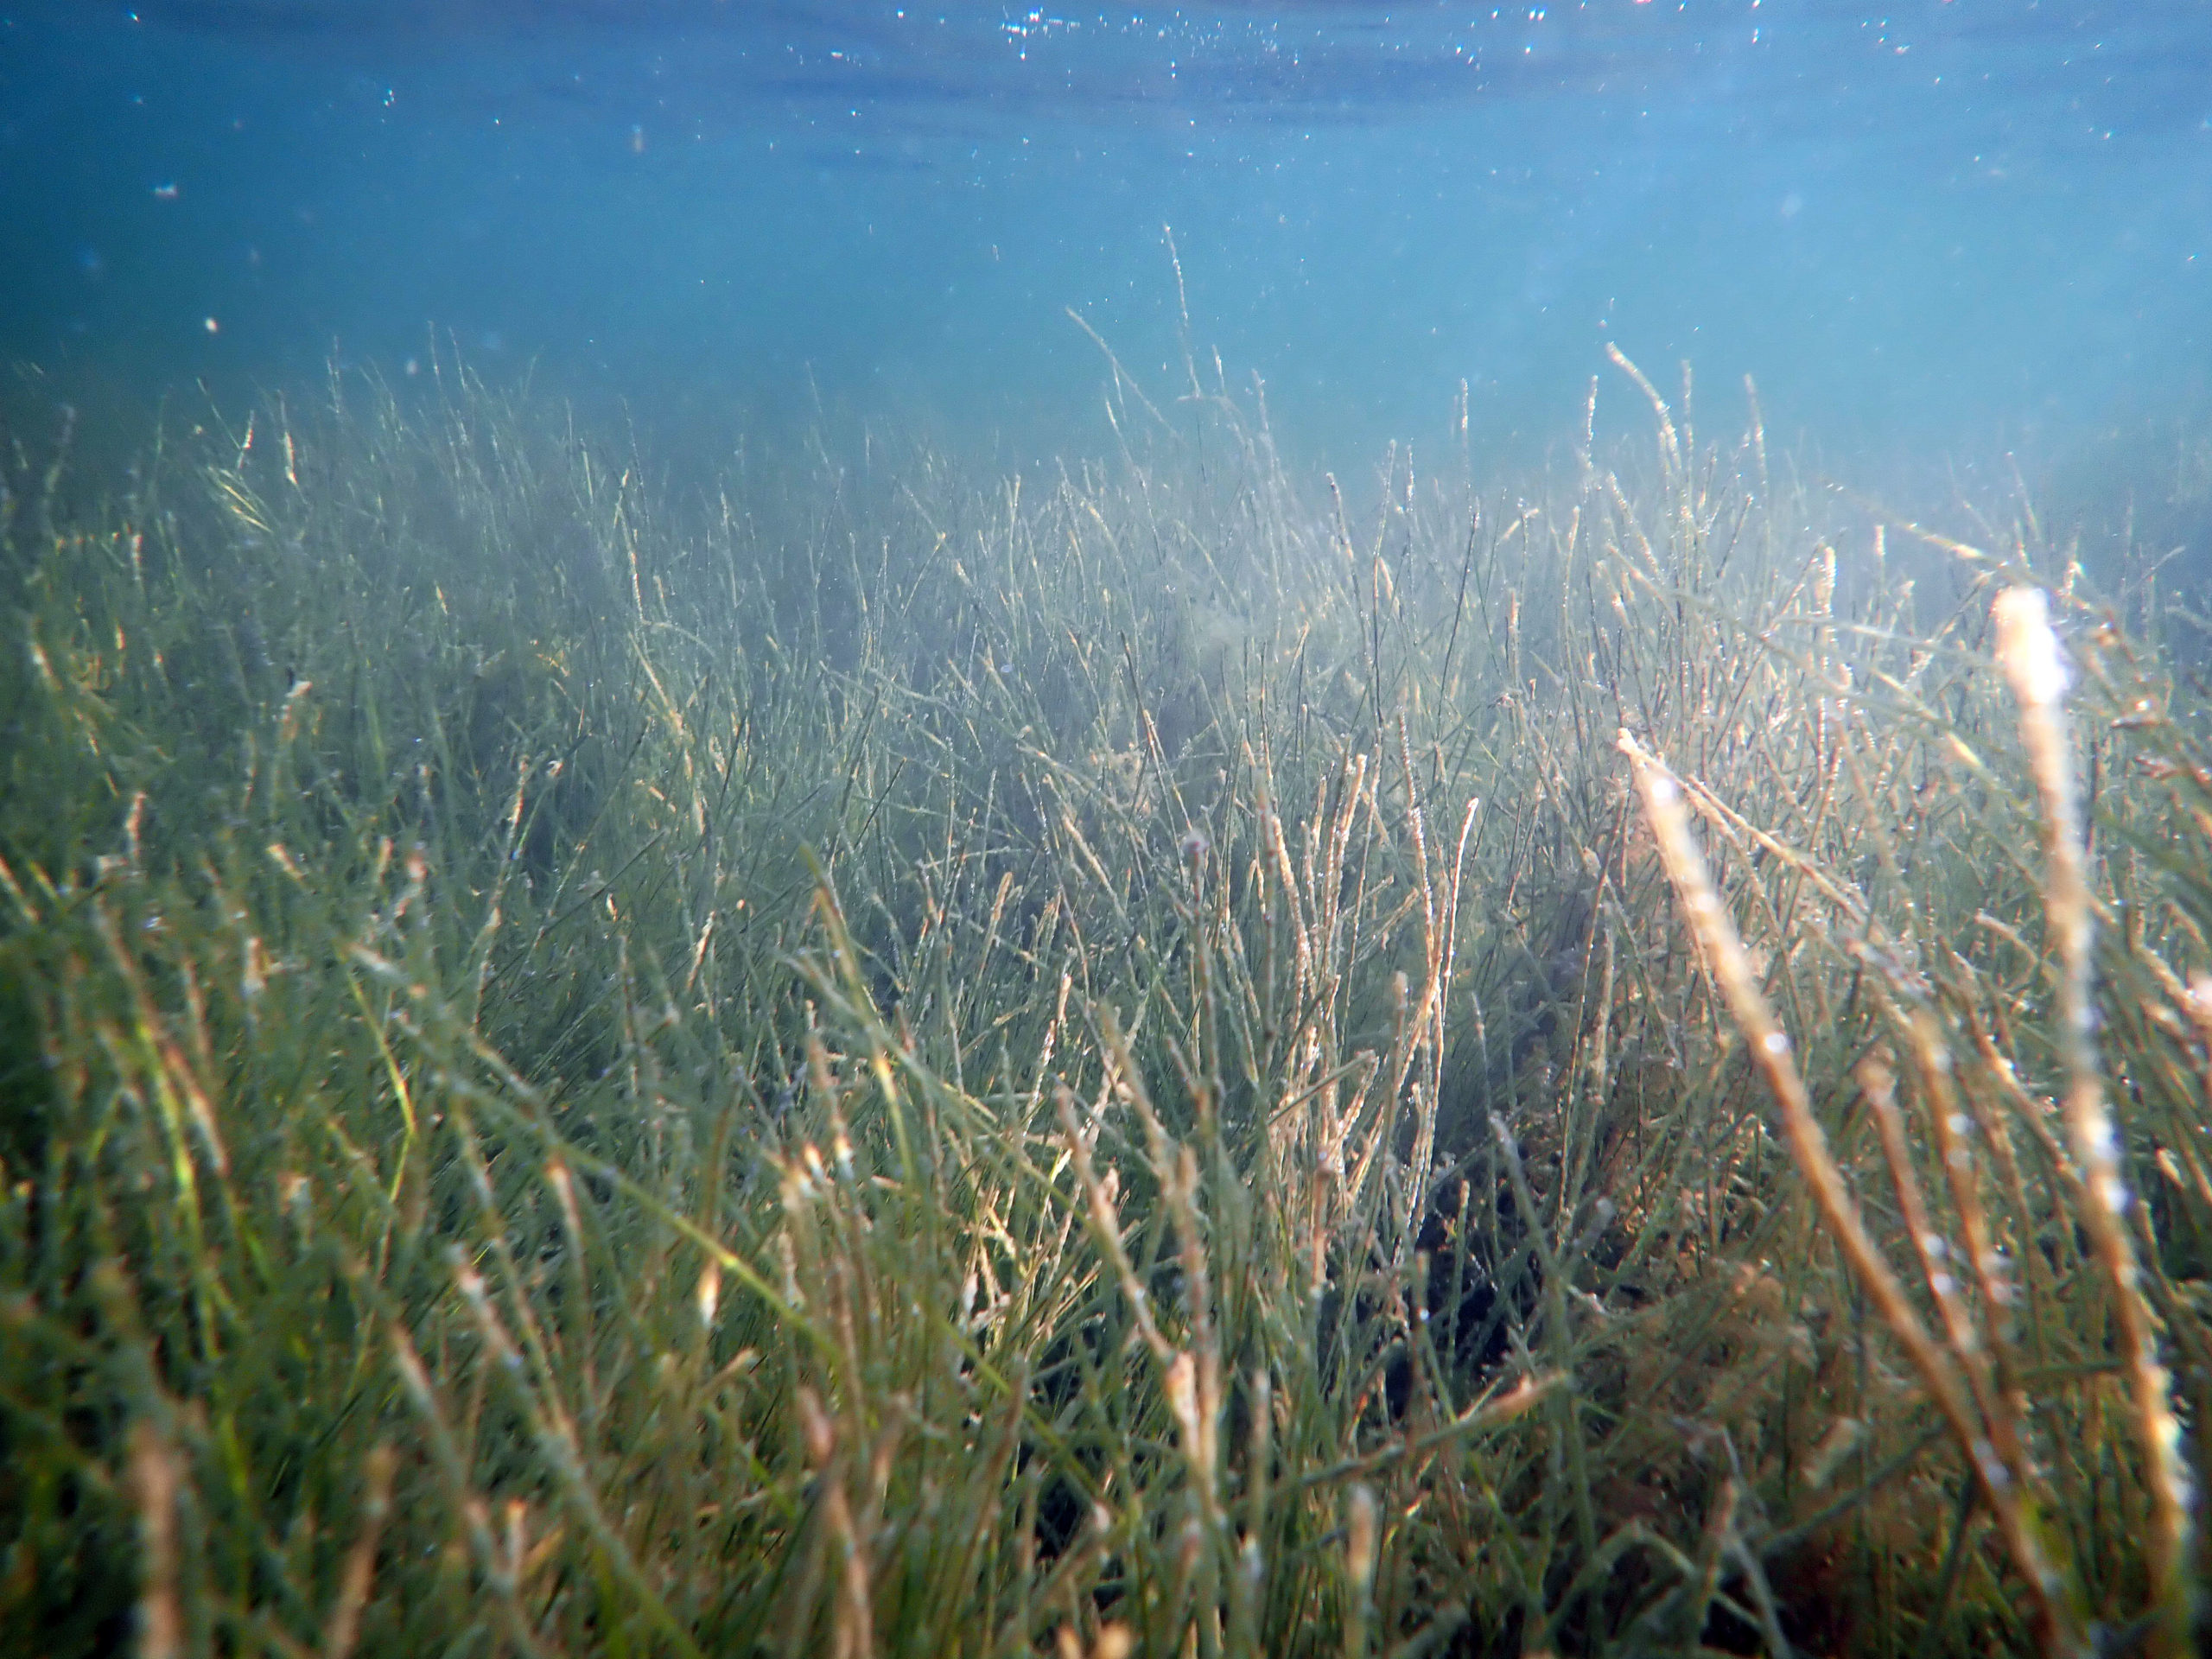 Ruppia seagrass